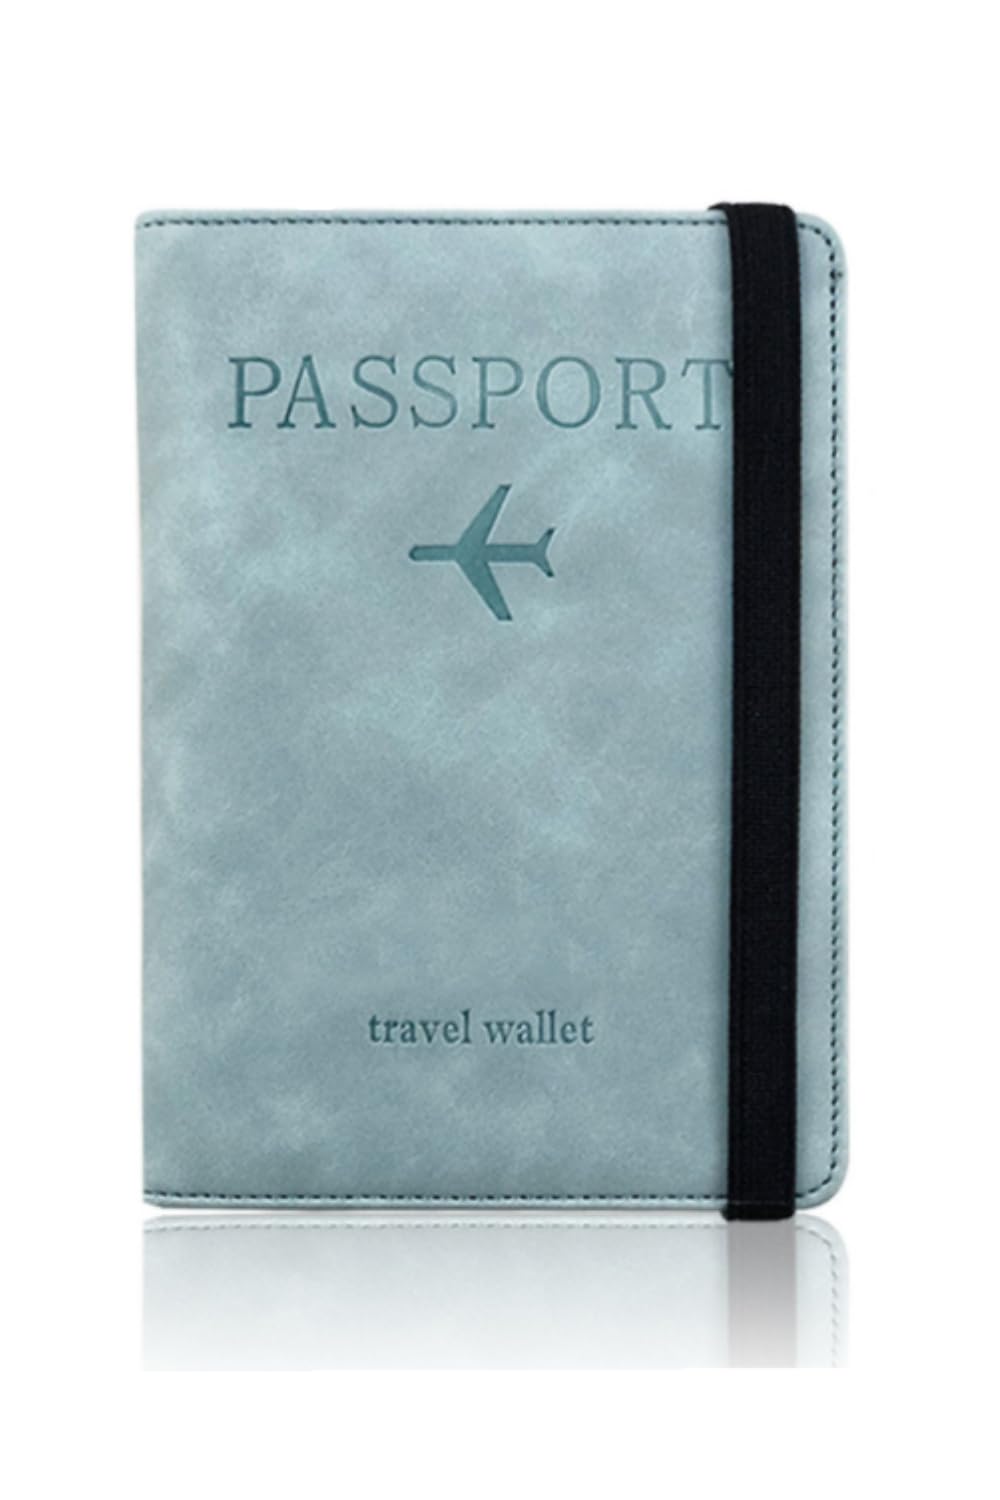 [YFFSFDC] パスポートケース スキミング防止 パスポートカバー ホルダー トラベルウォレット パスポートカードケース 多機能収納ポケット 国内海外旅行用品 海外出張 海外旅行（ライトブルー）